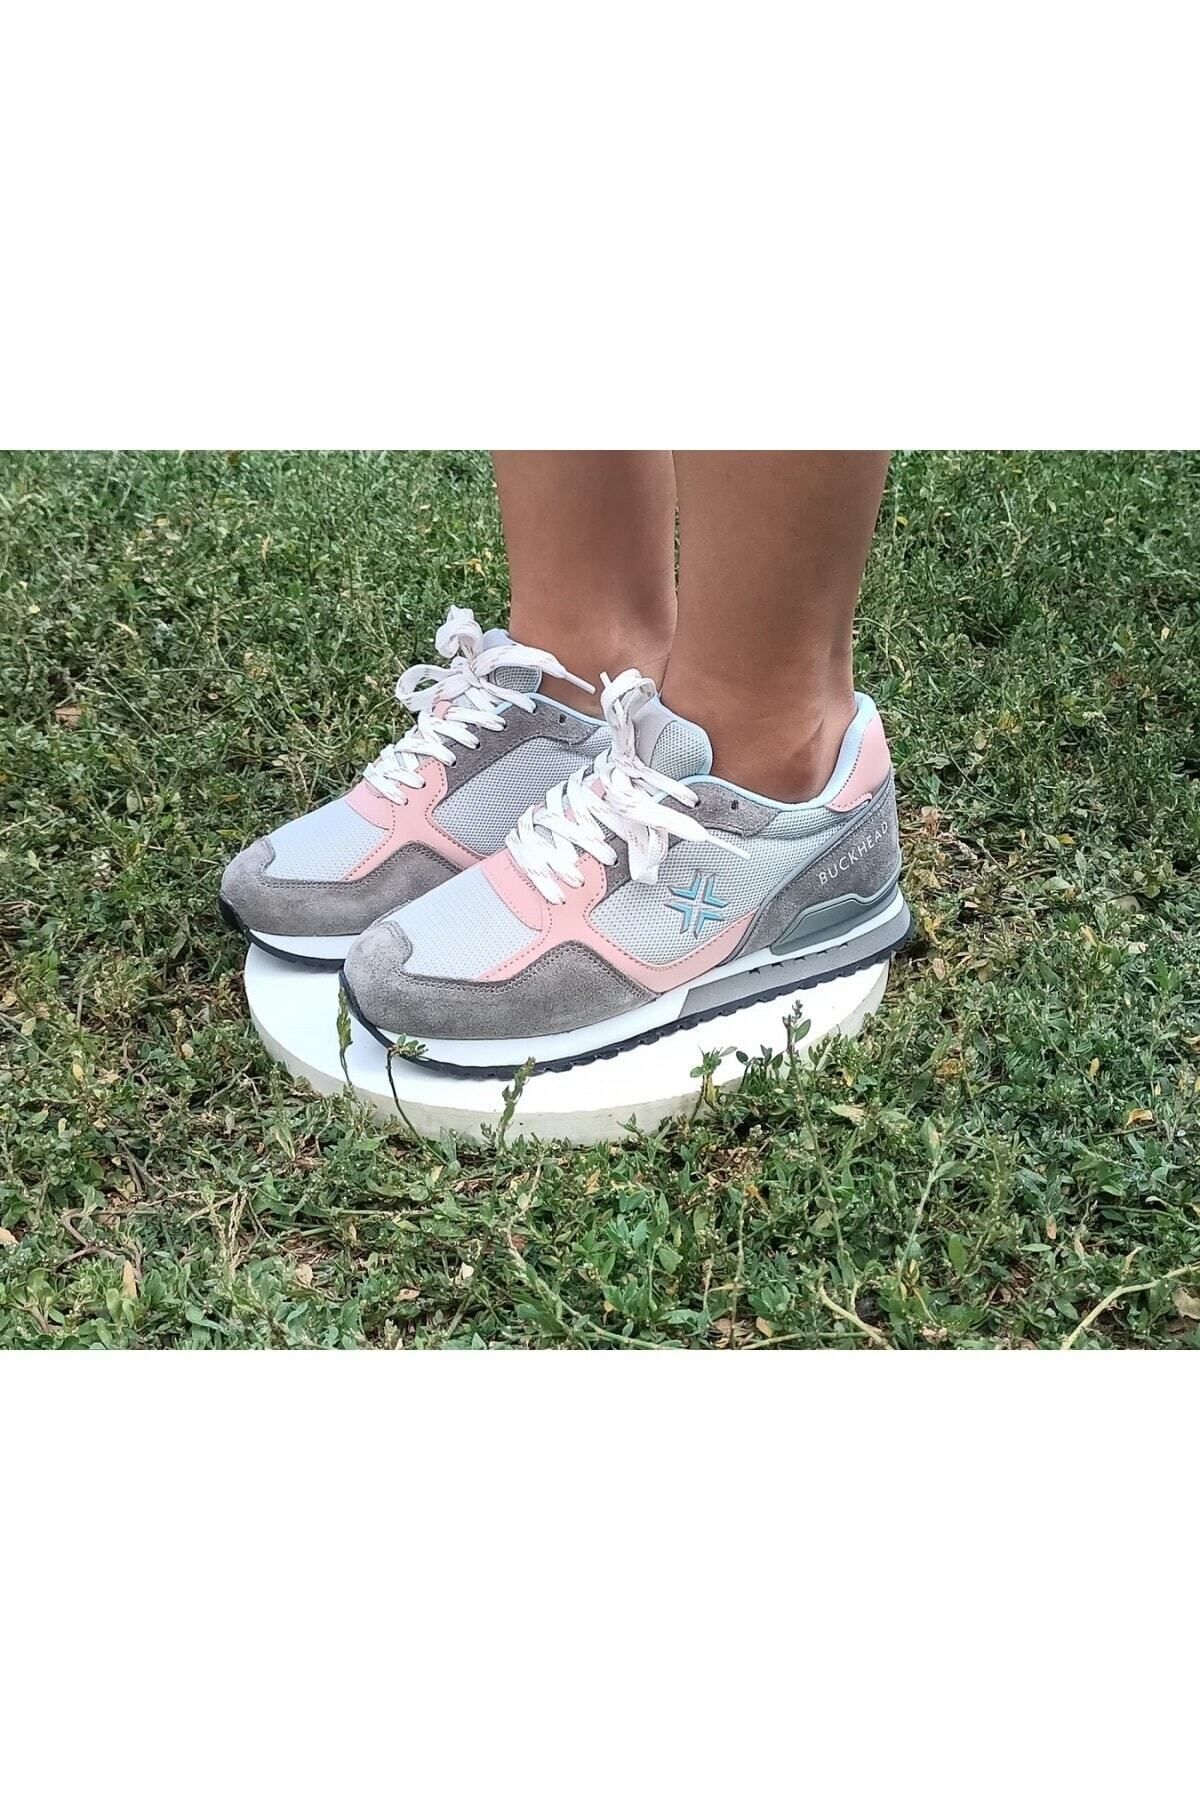 BUCKHEAD Düz Taban Kadın Tam Ortopedik Yürüyüş Günlük Sneakers Spor Ayakkabı